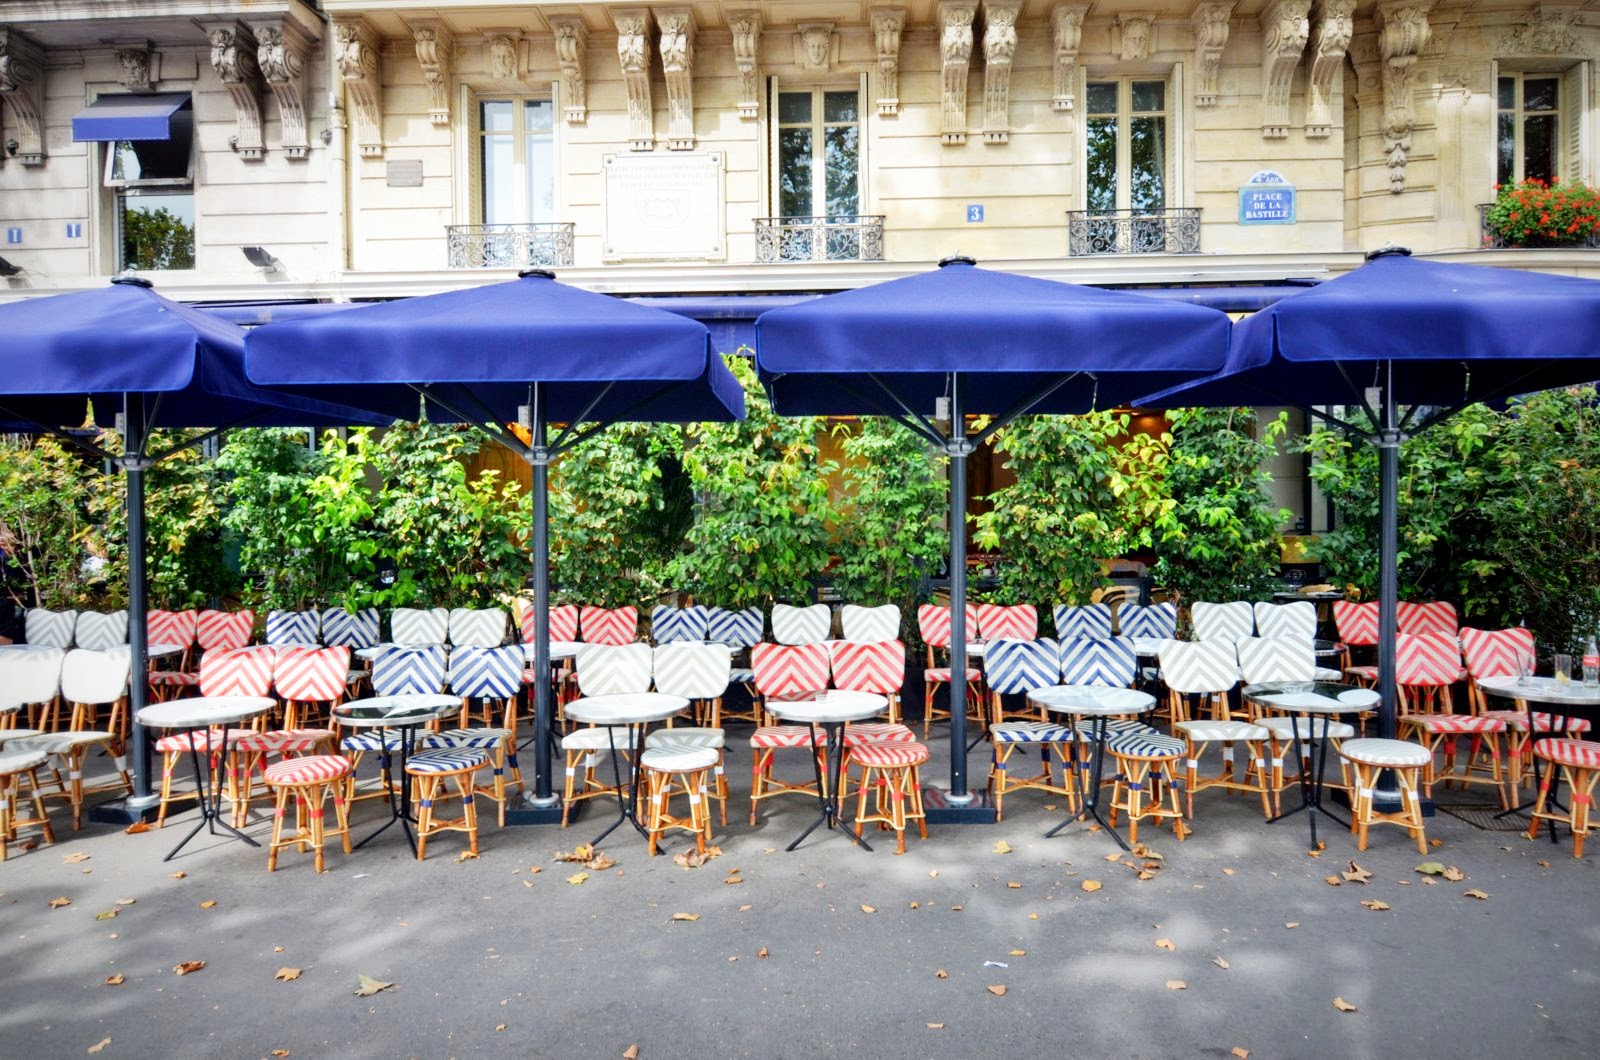 ParisDailyPhoto: A (very) French café